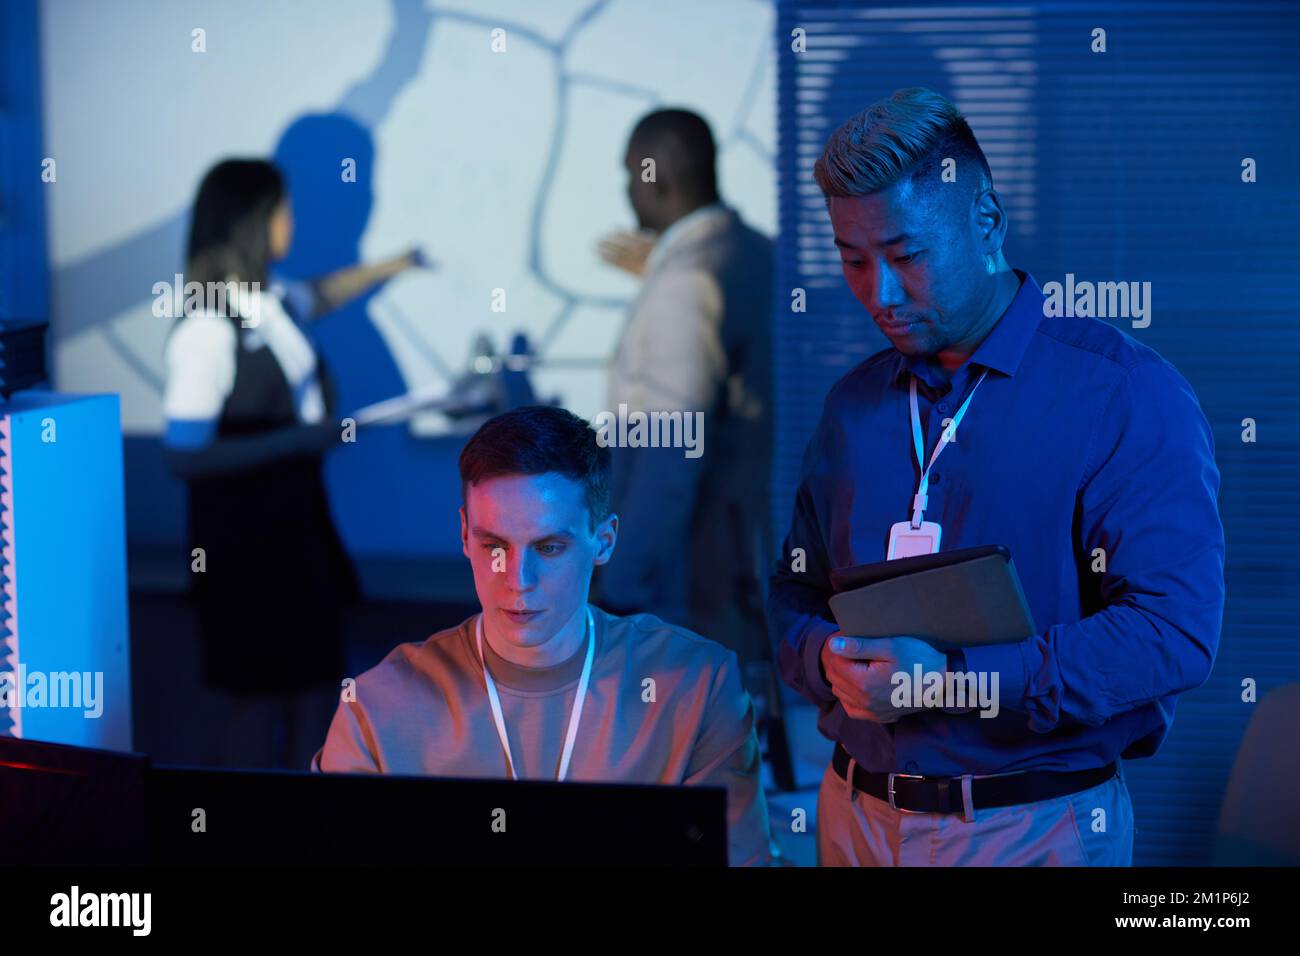 Porträt von zwei Personen, die im Kontrollzentrum arbeiten, mit futuristischen Blau- und Rottönen Stockfoto